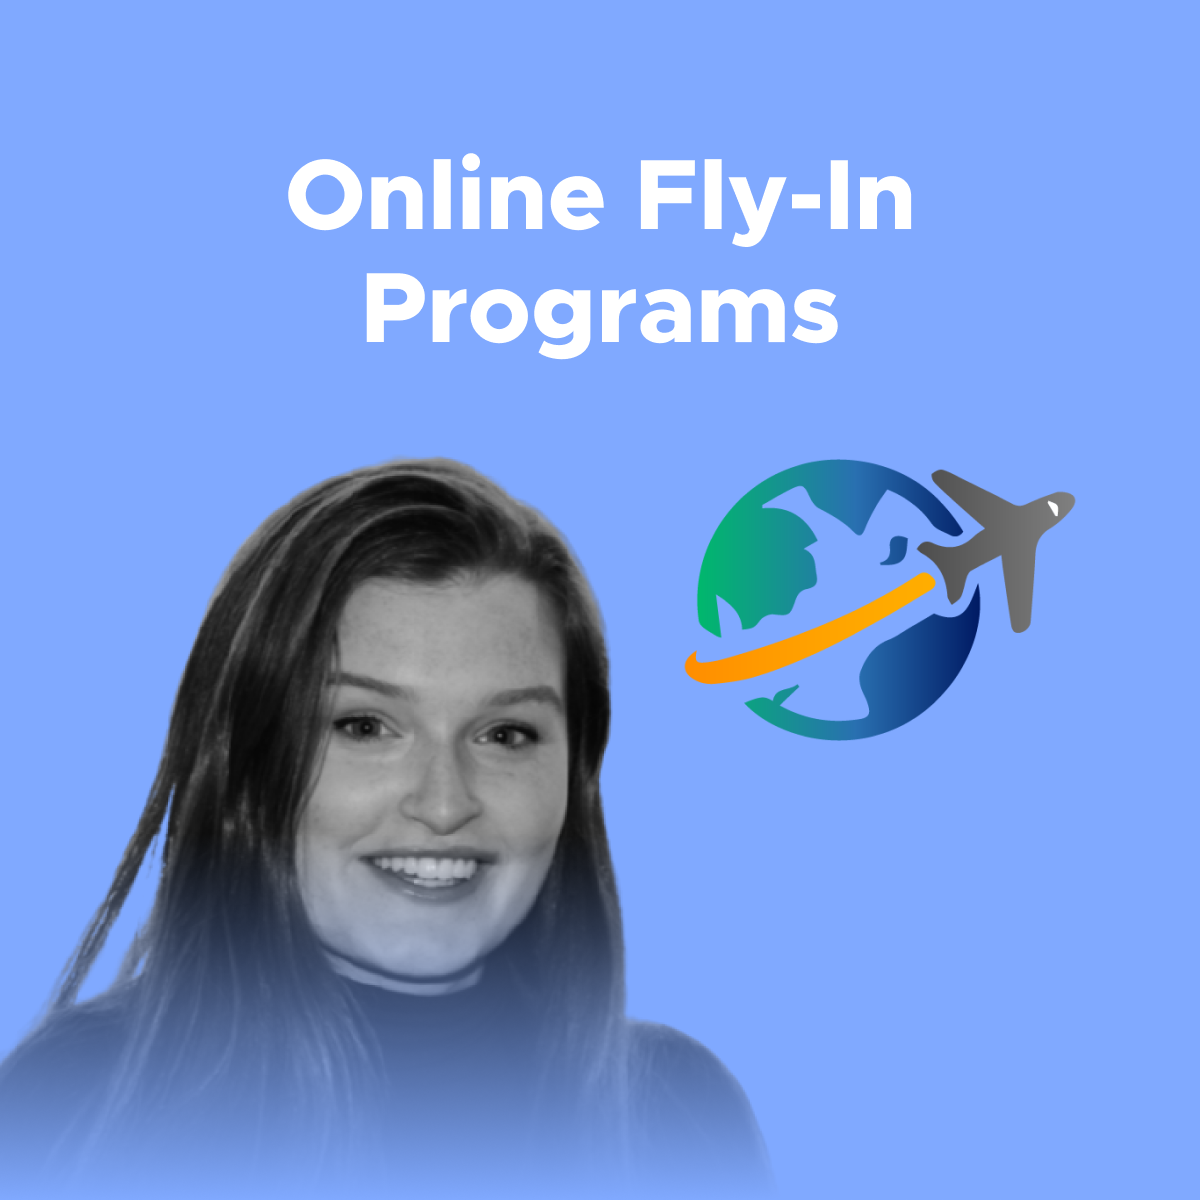 Online FlyIn Programs